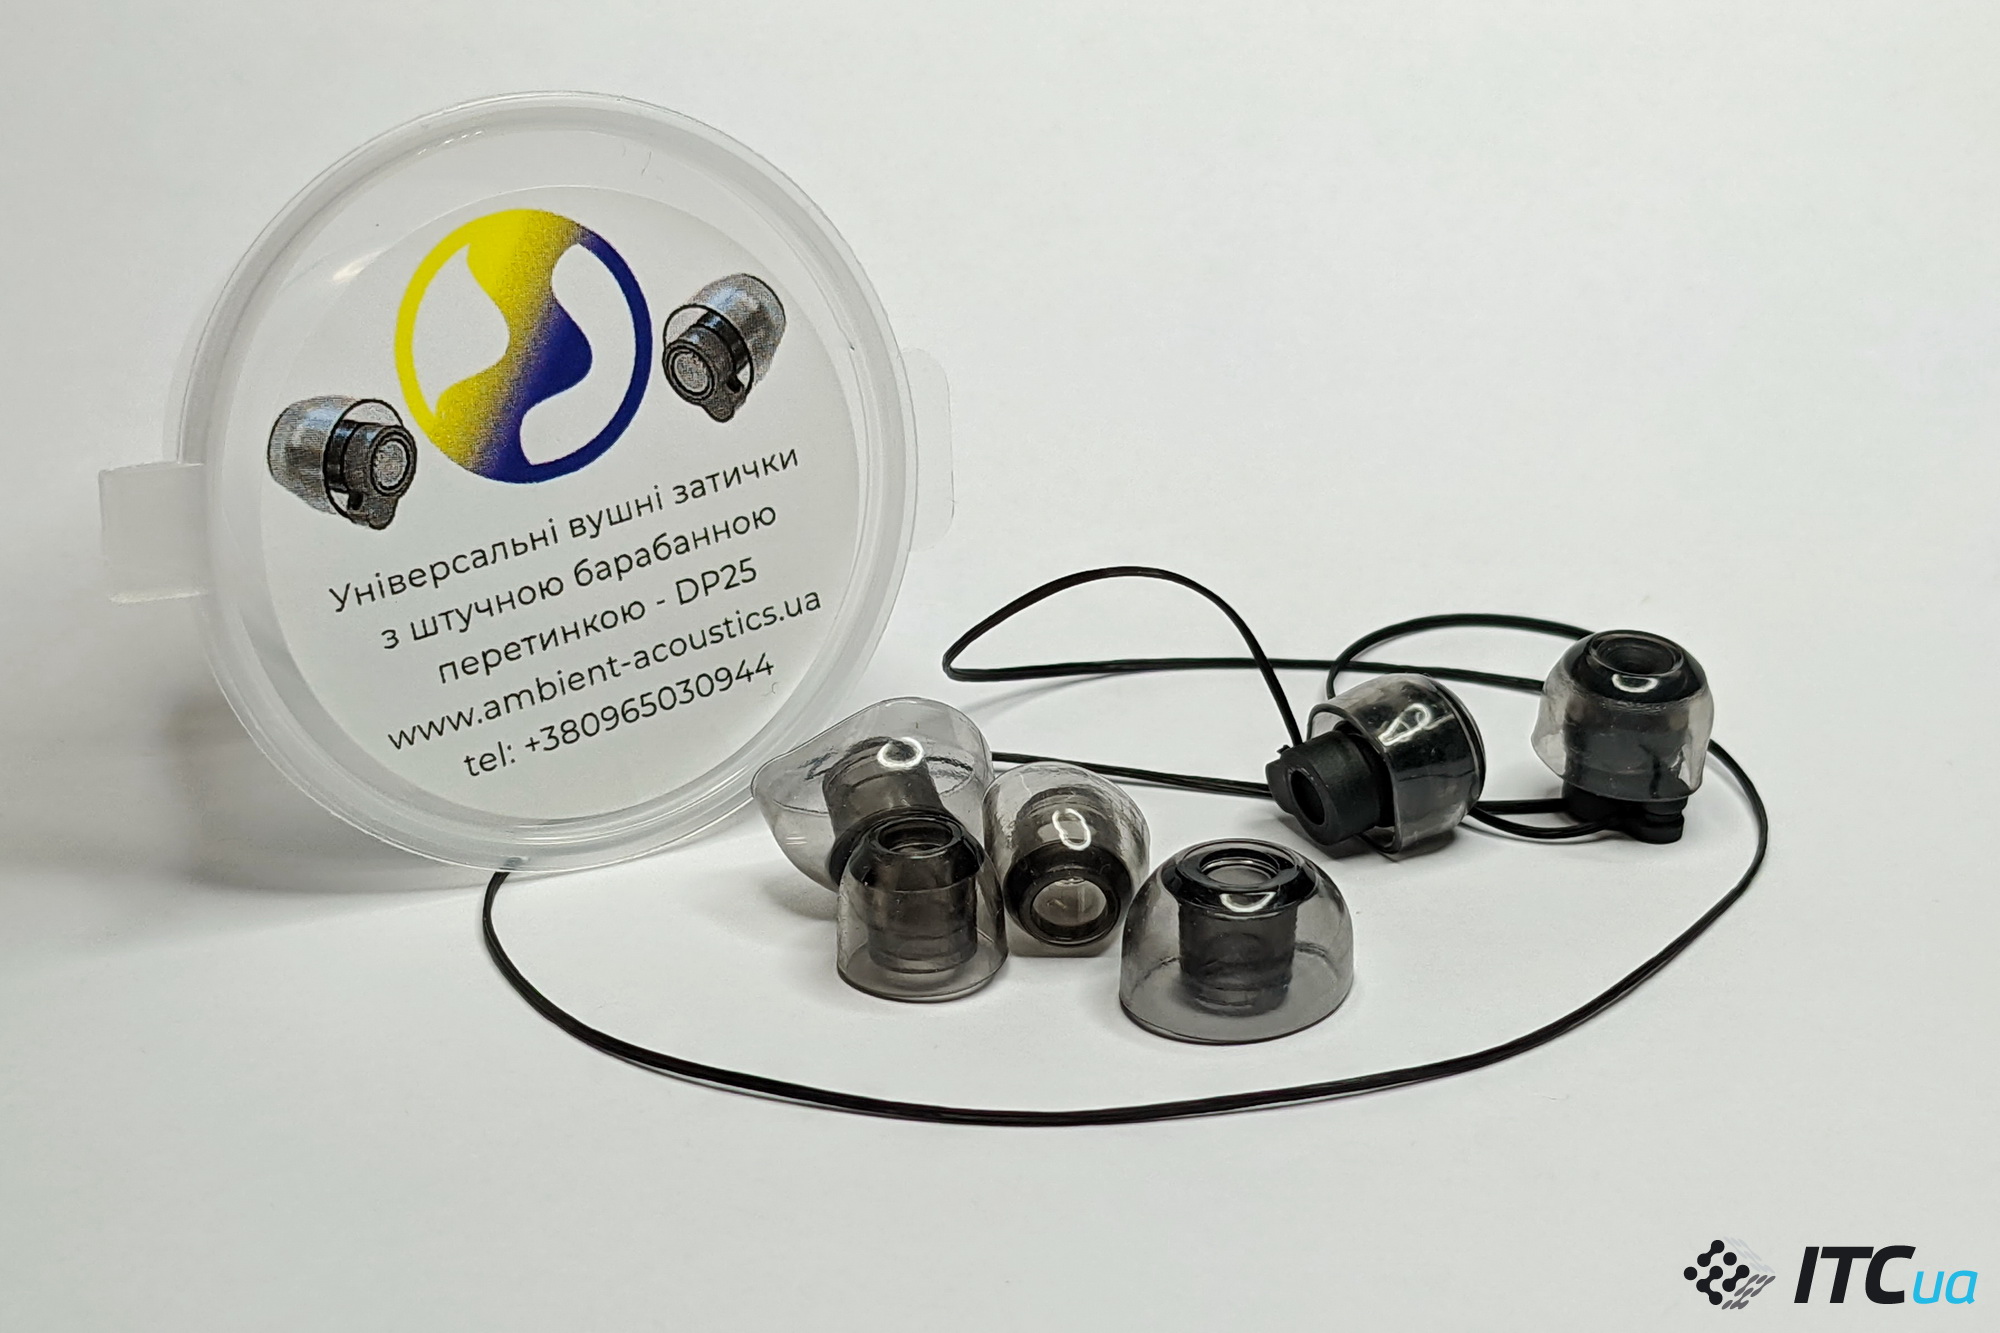 Обзор защитных беруш Ambient Acoustics Defence Plug 25dB – украинский бренд на страже слуха ВСУ